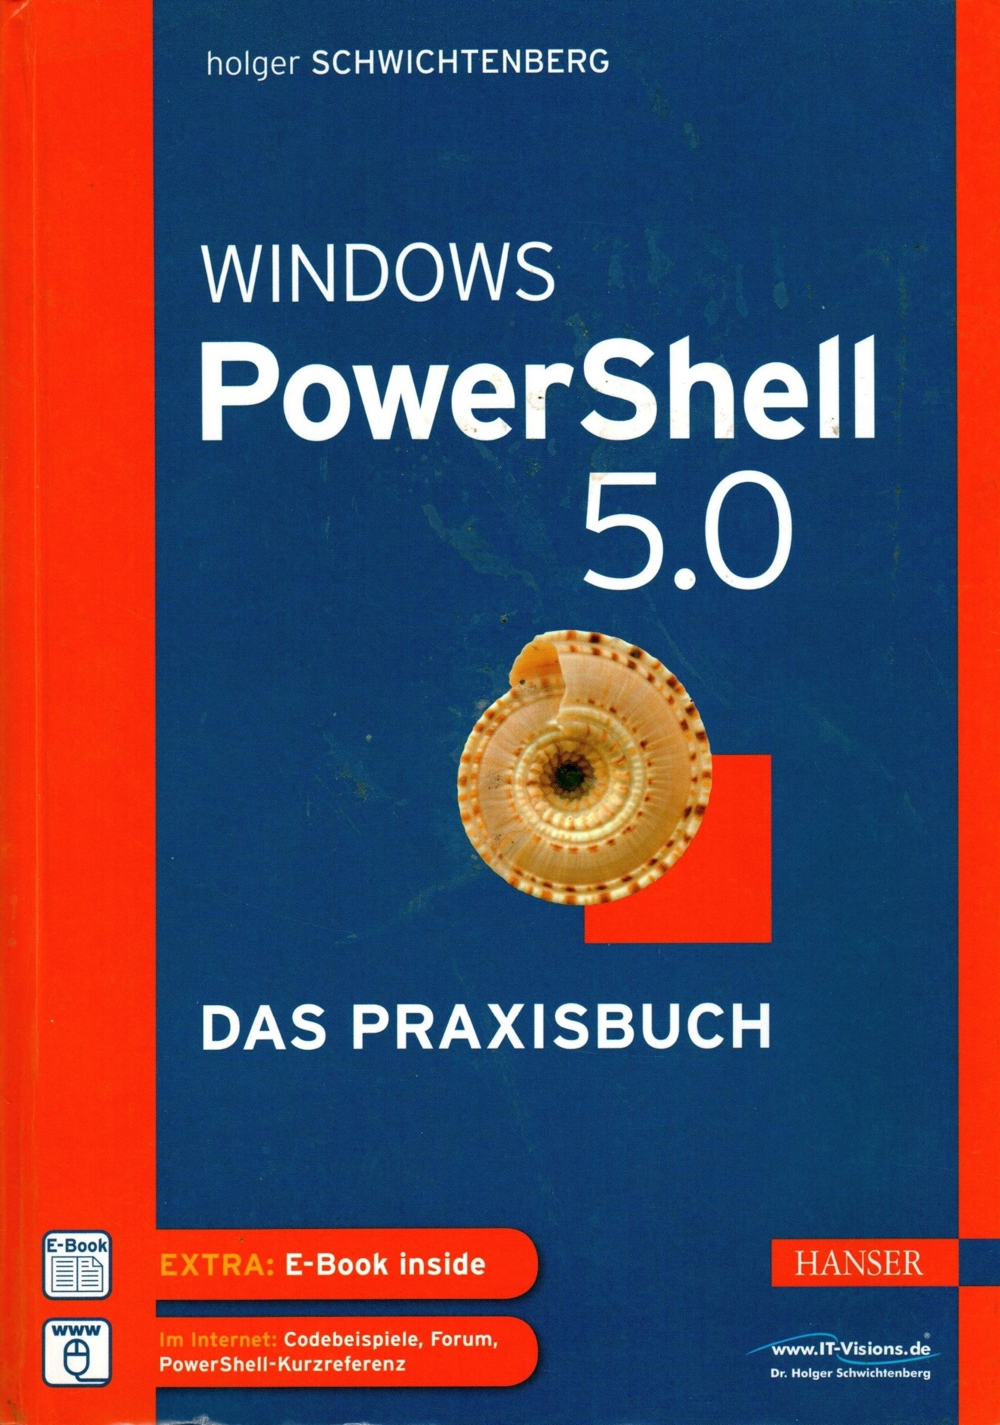 Fachbuch " Windows PowerShell 5.0: Das Praxisbuch " (deutsch)